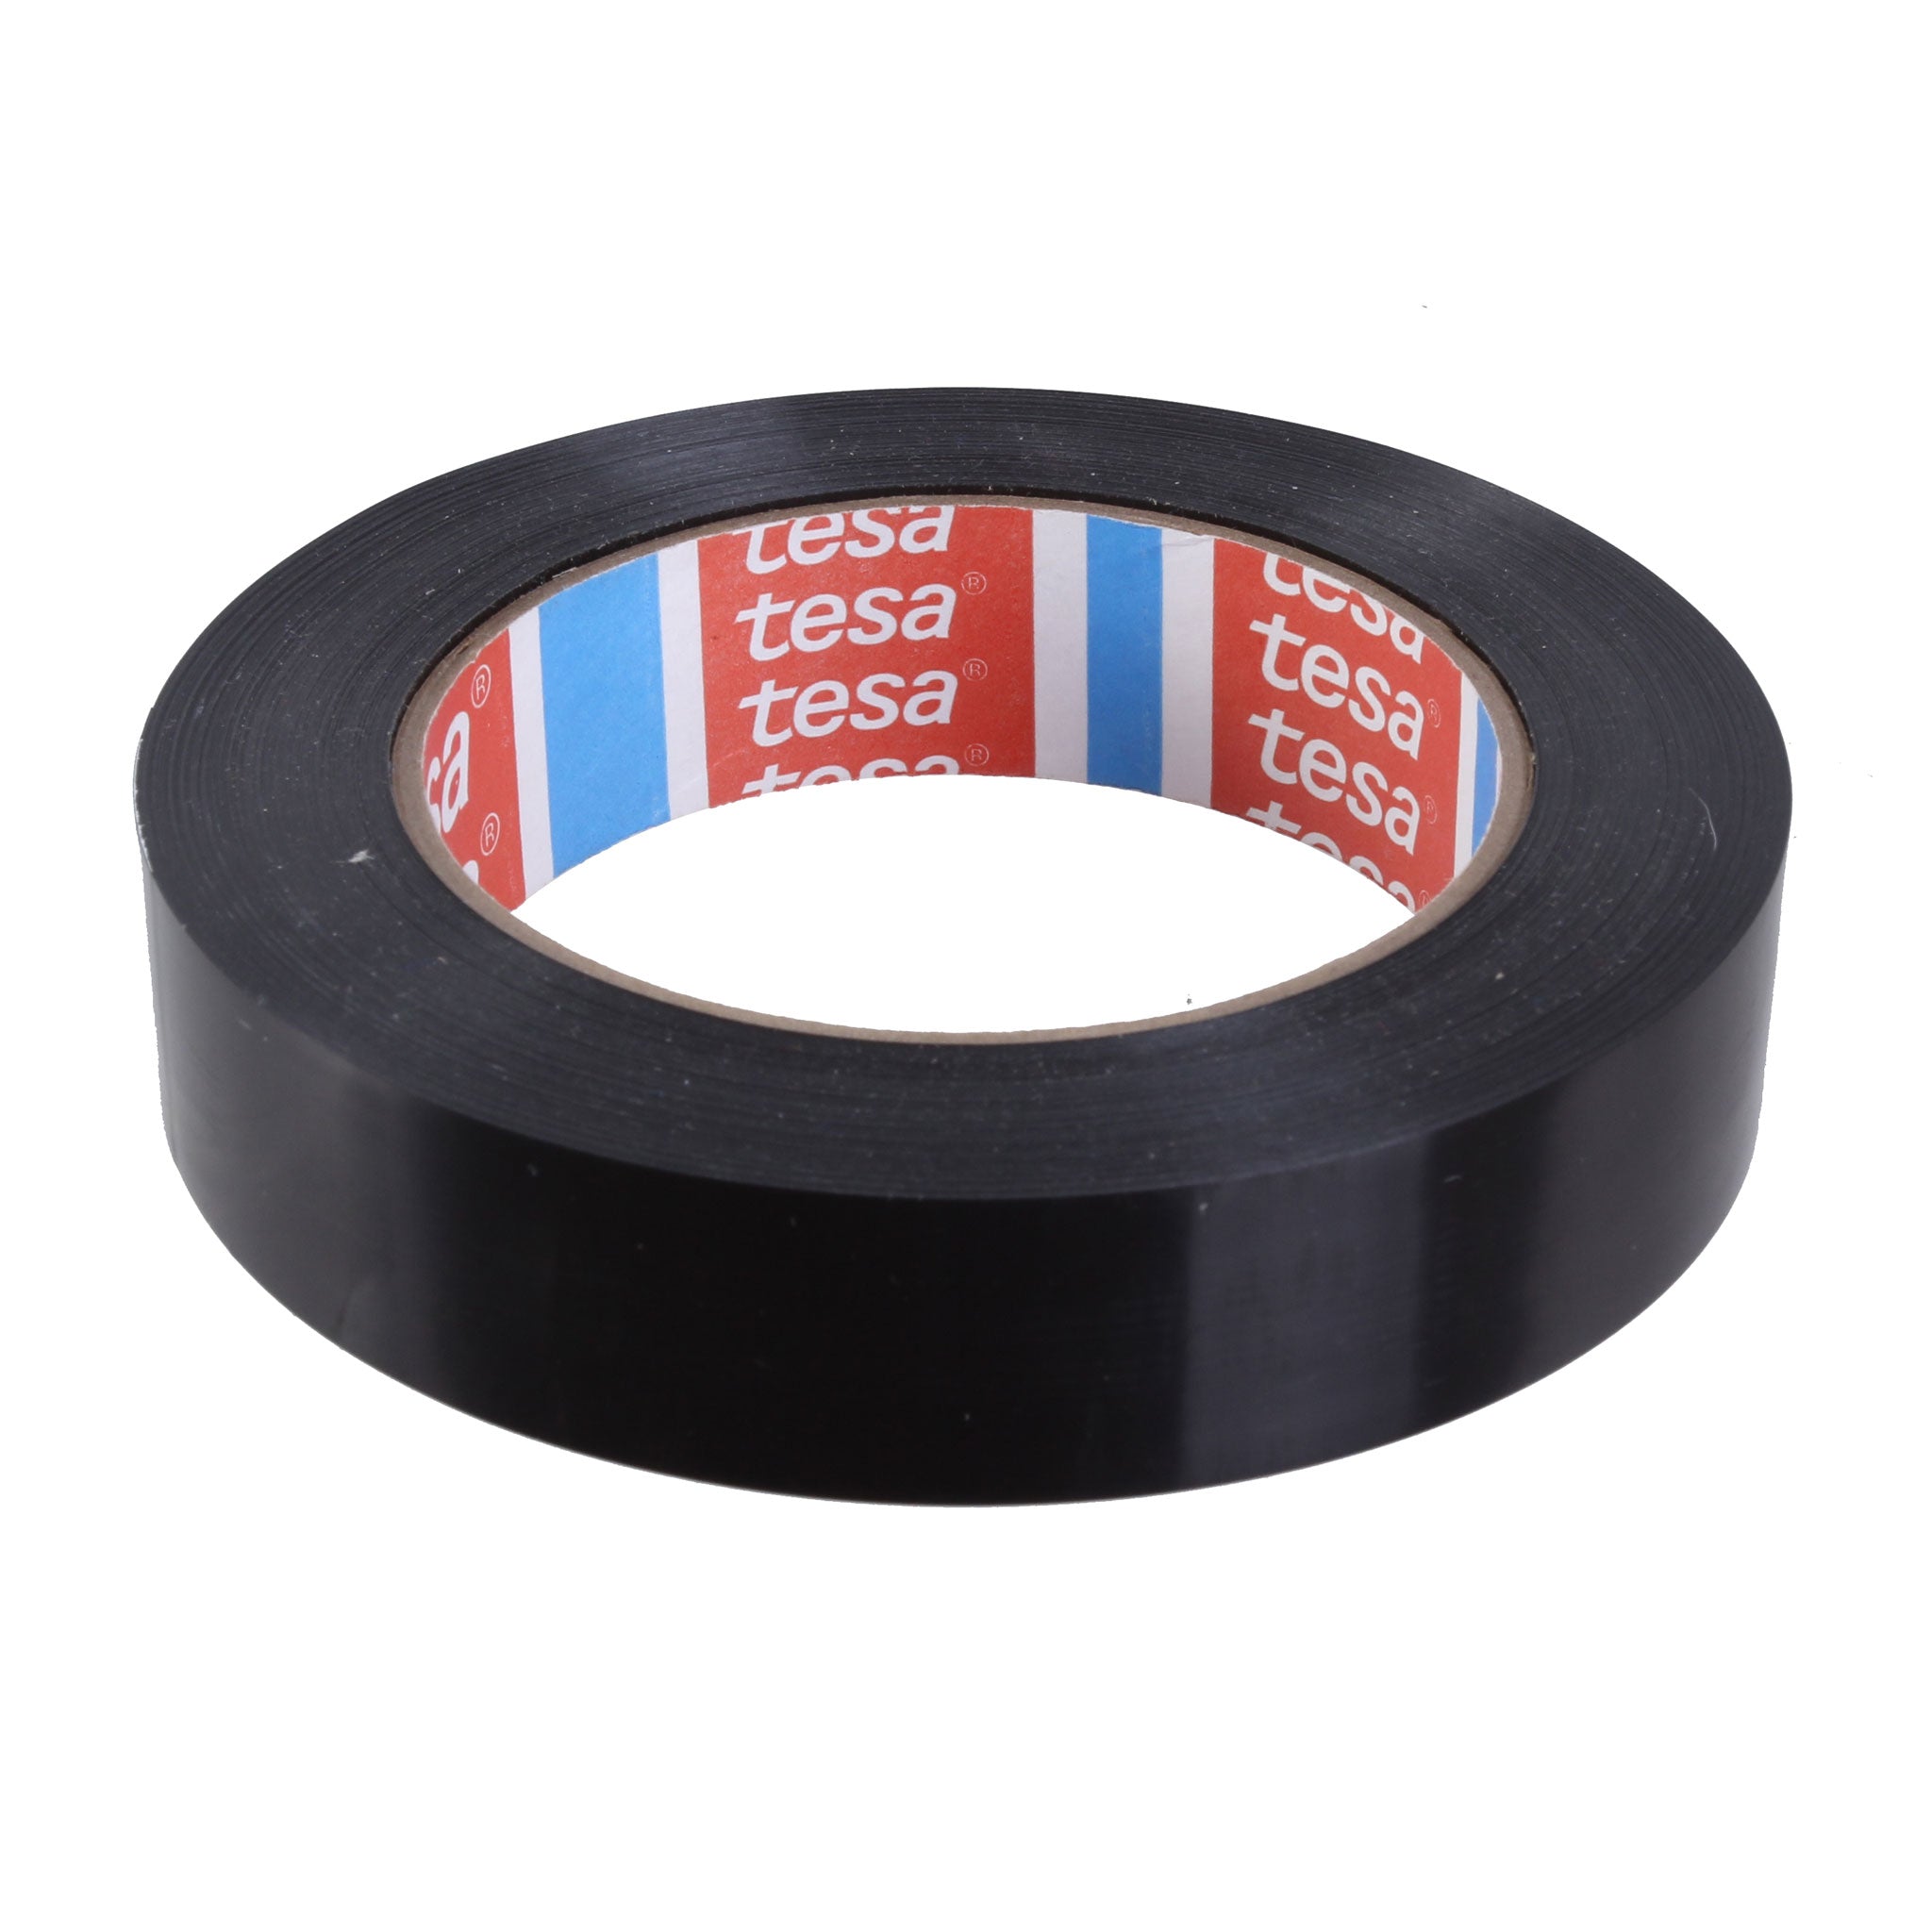 Tesa Tape Rim Tape 24mm - 60 Yard Roll